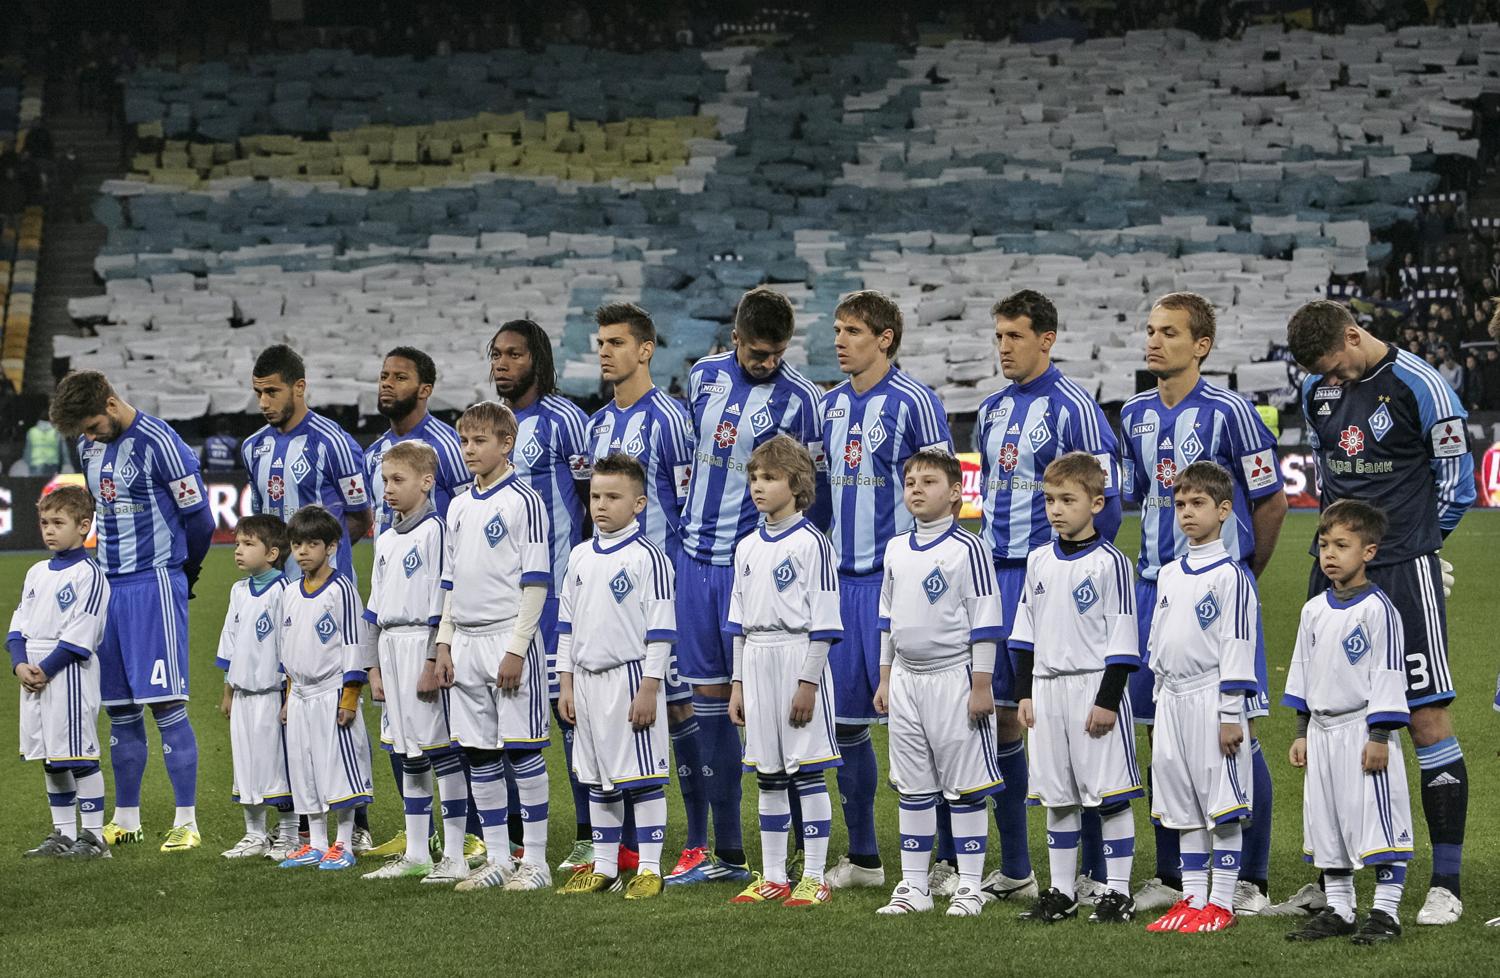 A Dinamo Kijev a szimferopoli stadionban - a jövőben orosz csapatokat fogadnak majd